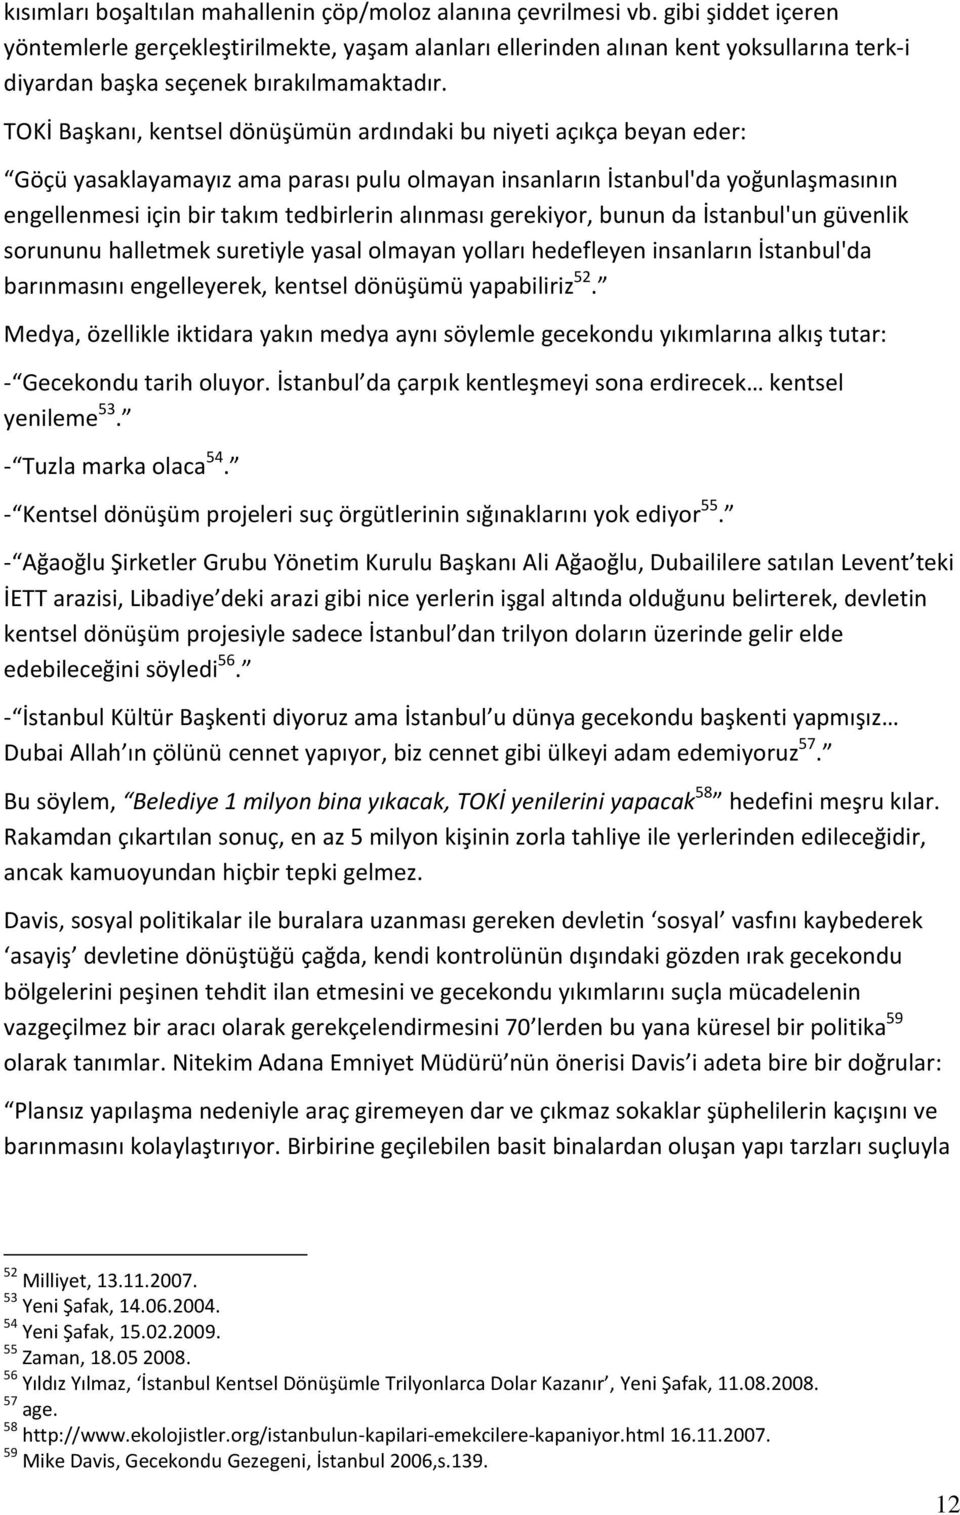 TOKİ Başkanı, kentsel dönüşümün ardındaki bu niyeti açıkça beyan eder: Göçü yasaklayamayız ama parası pulu olmayan insanların İstanbul'da yoğunlaşmasının engellenmesi için bir takım tedbirlerin